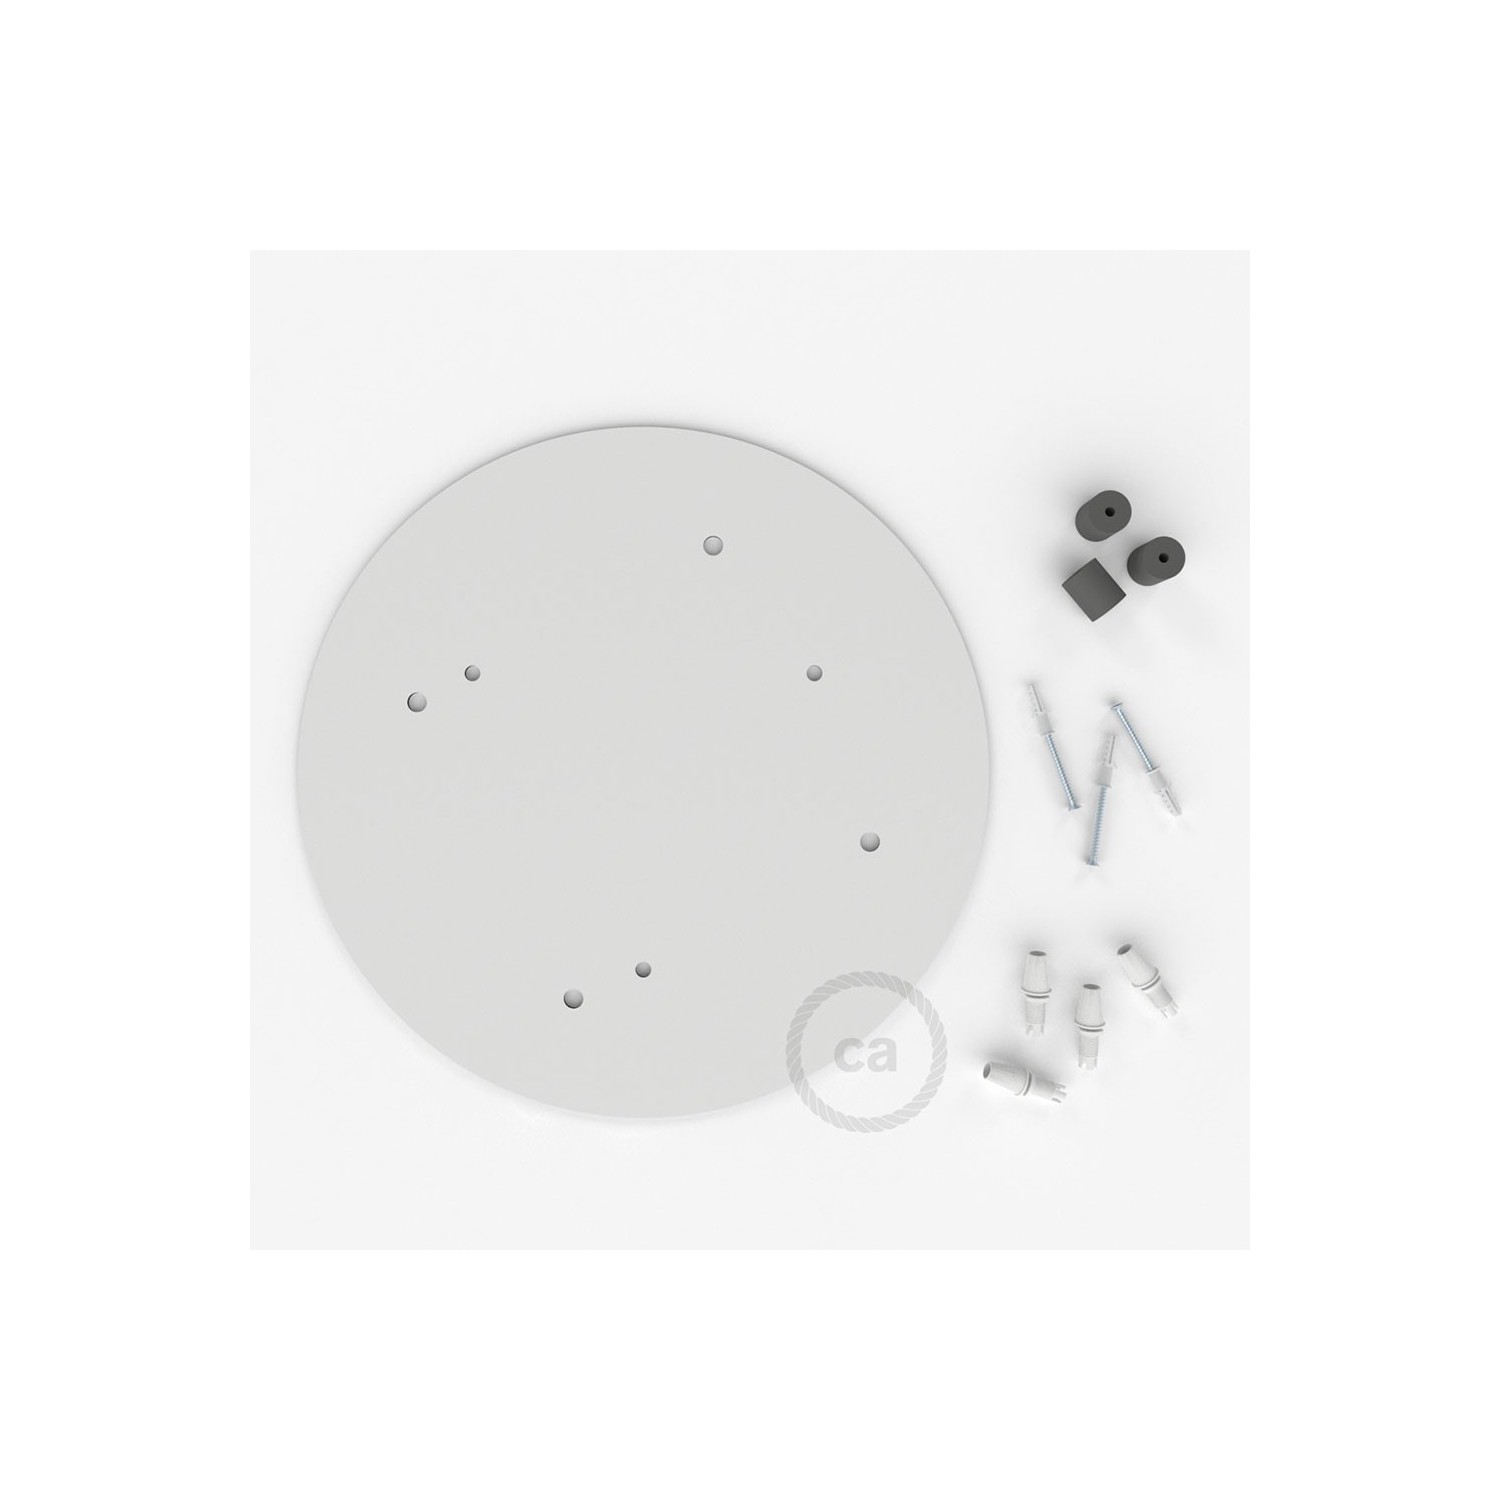 escudo XXL circular 35cm a 4 agujeros blanco completo de accesorios